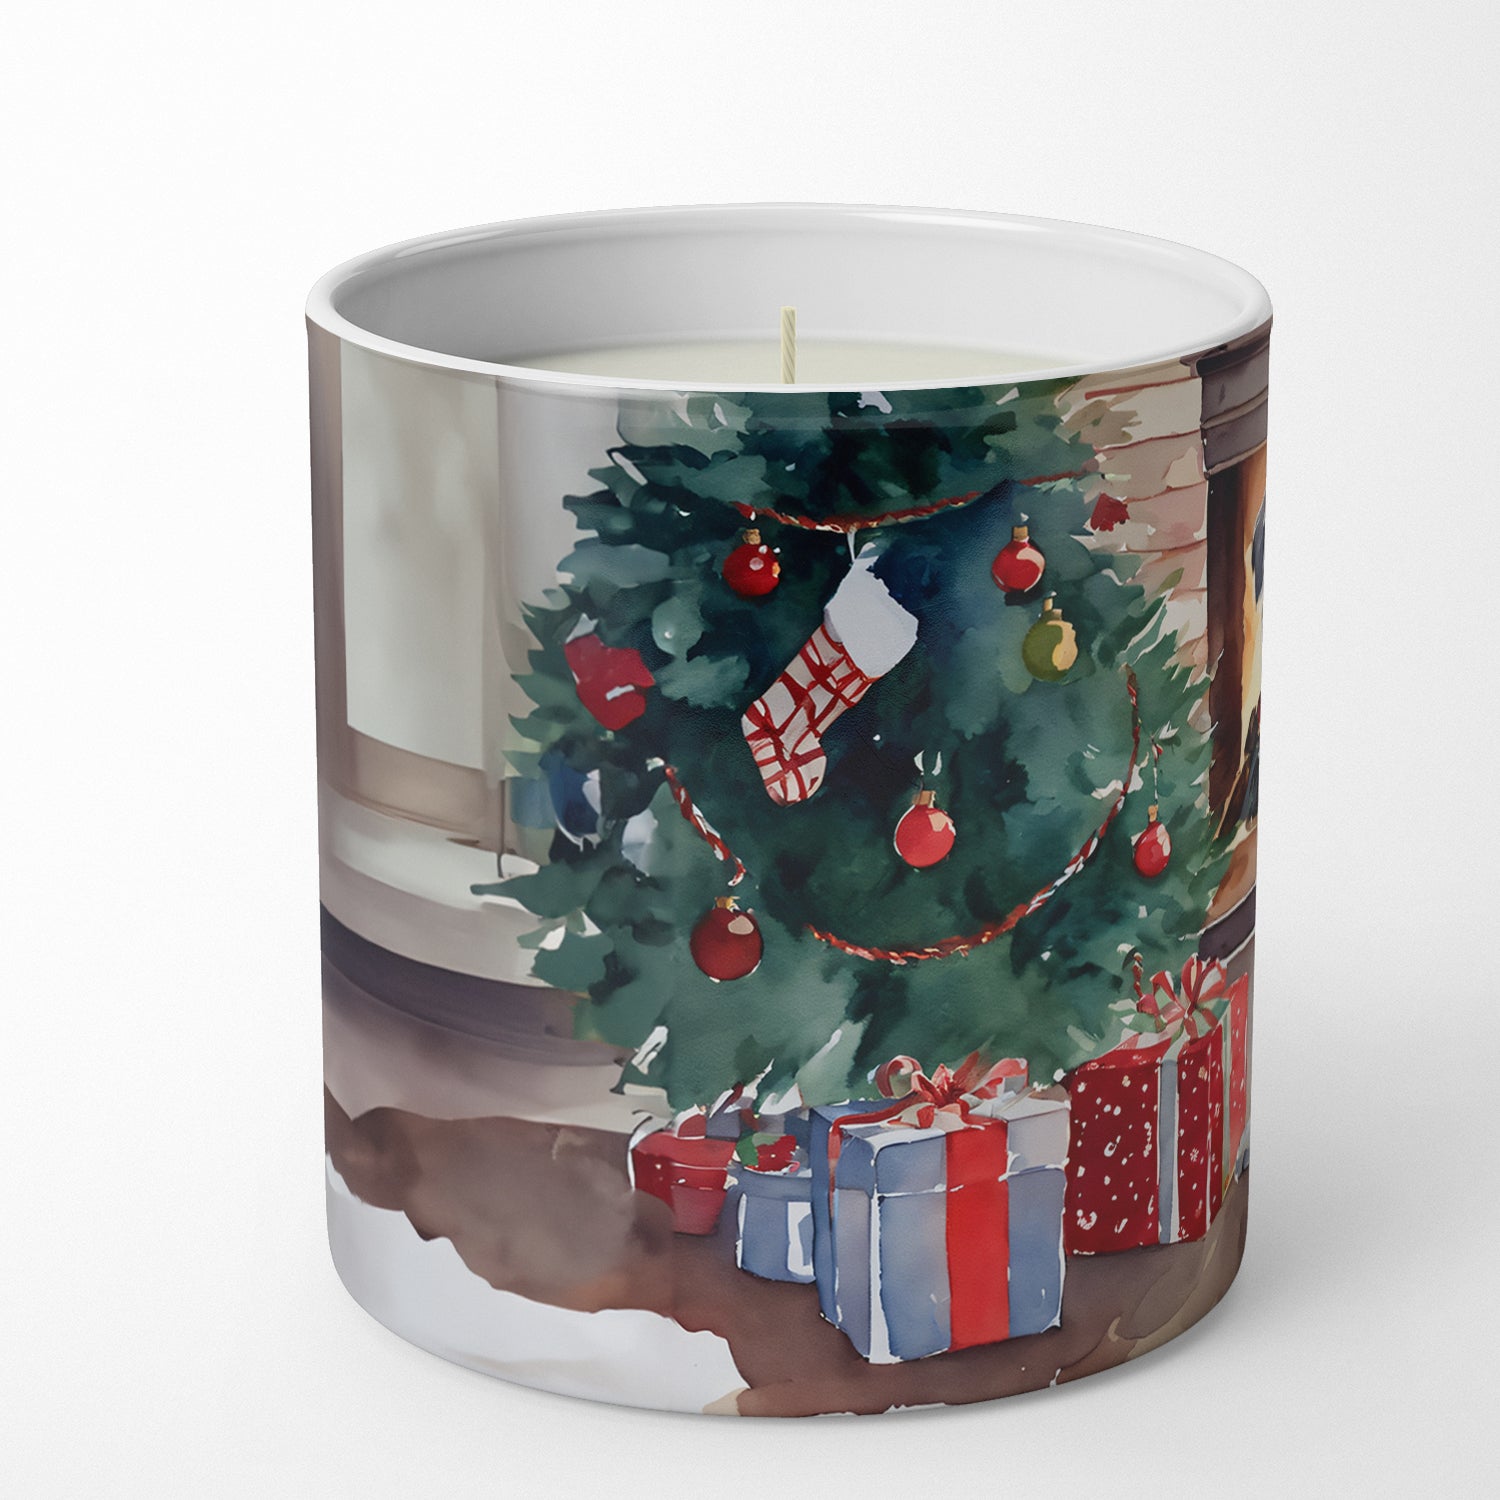 Irish Wolfhound Cozy Christmas Decorative Soy Candle